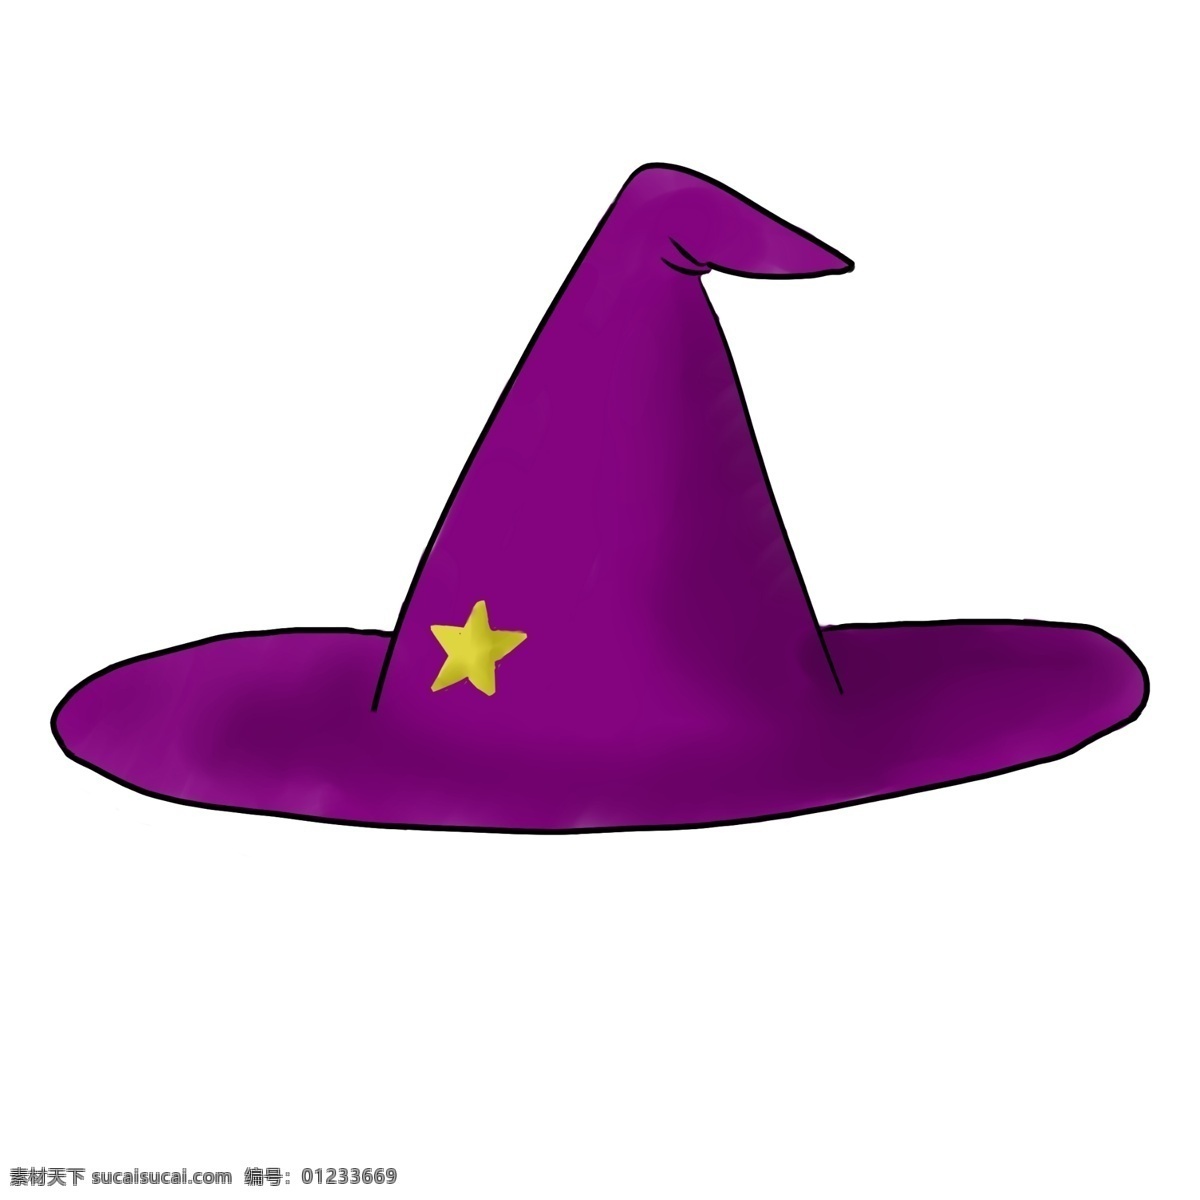 紫色 女巫 帽子 插画 紫色的帽子 卡通插画 帽子插画 装饰帽子 遮阳帽子 取暖帽子 女巫的帽子